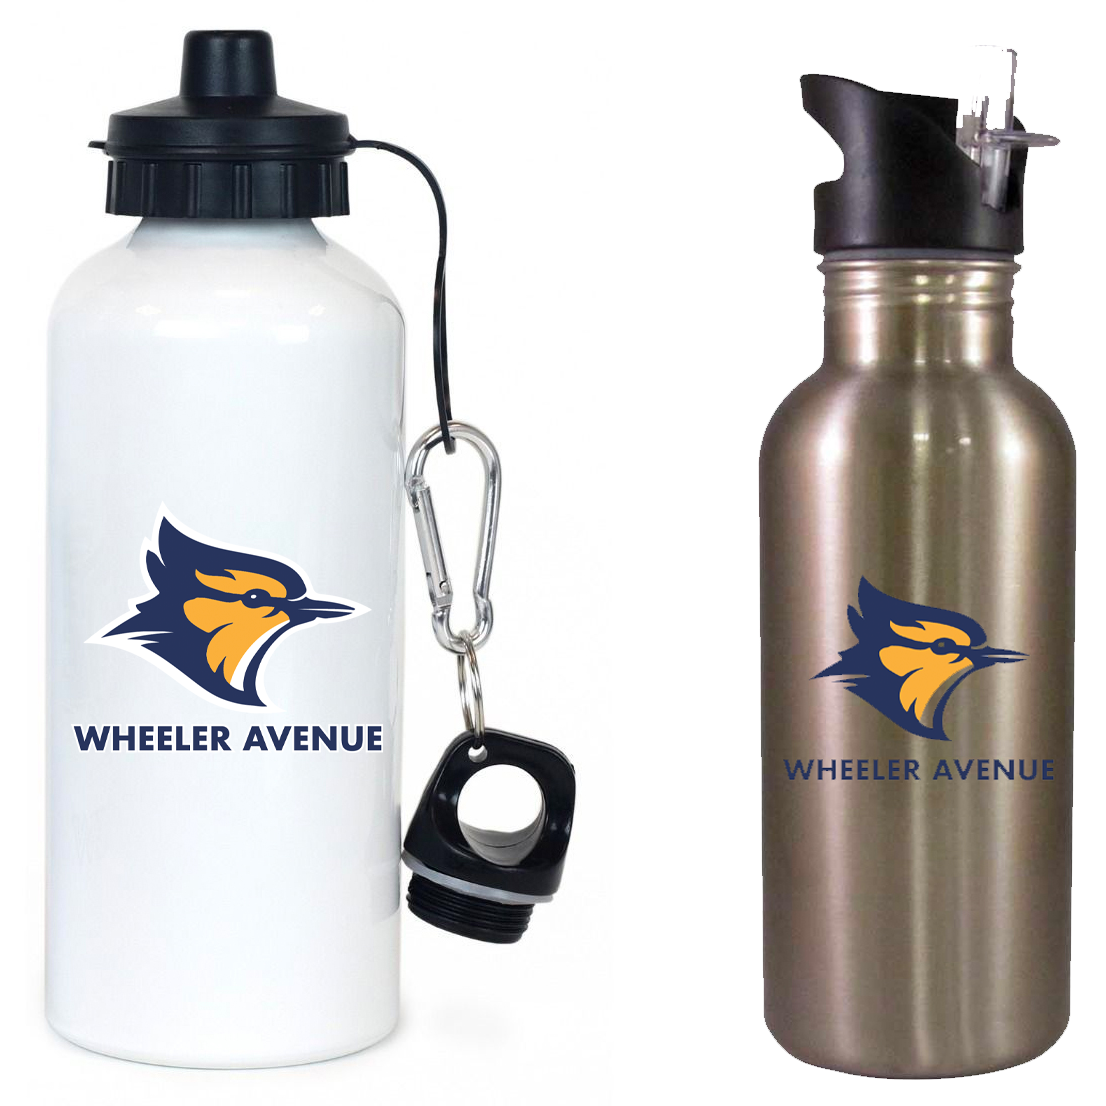 Wheeler Avenue School Team Water Bottle